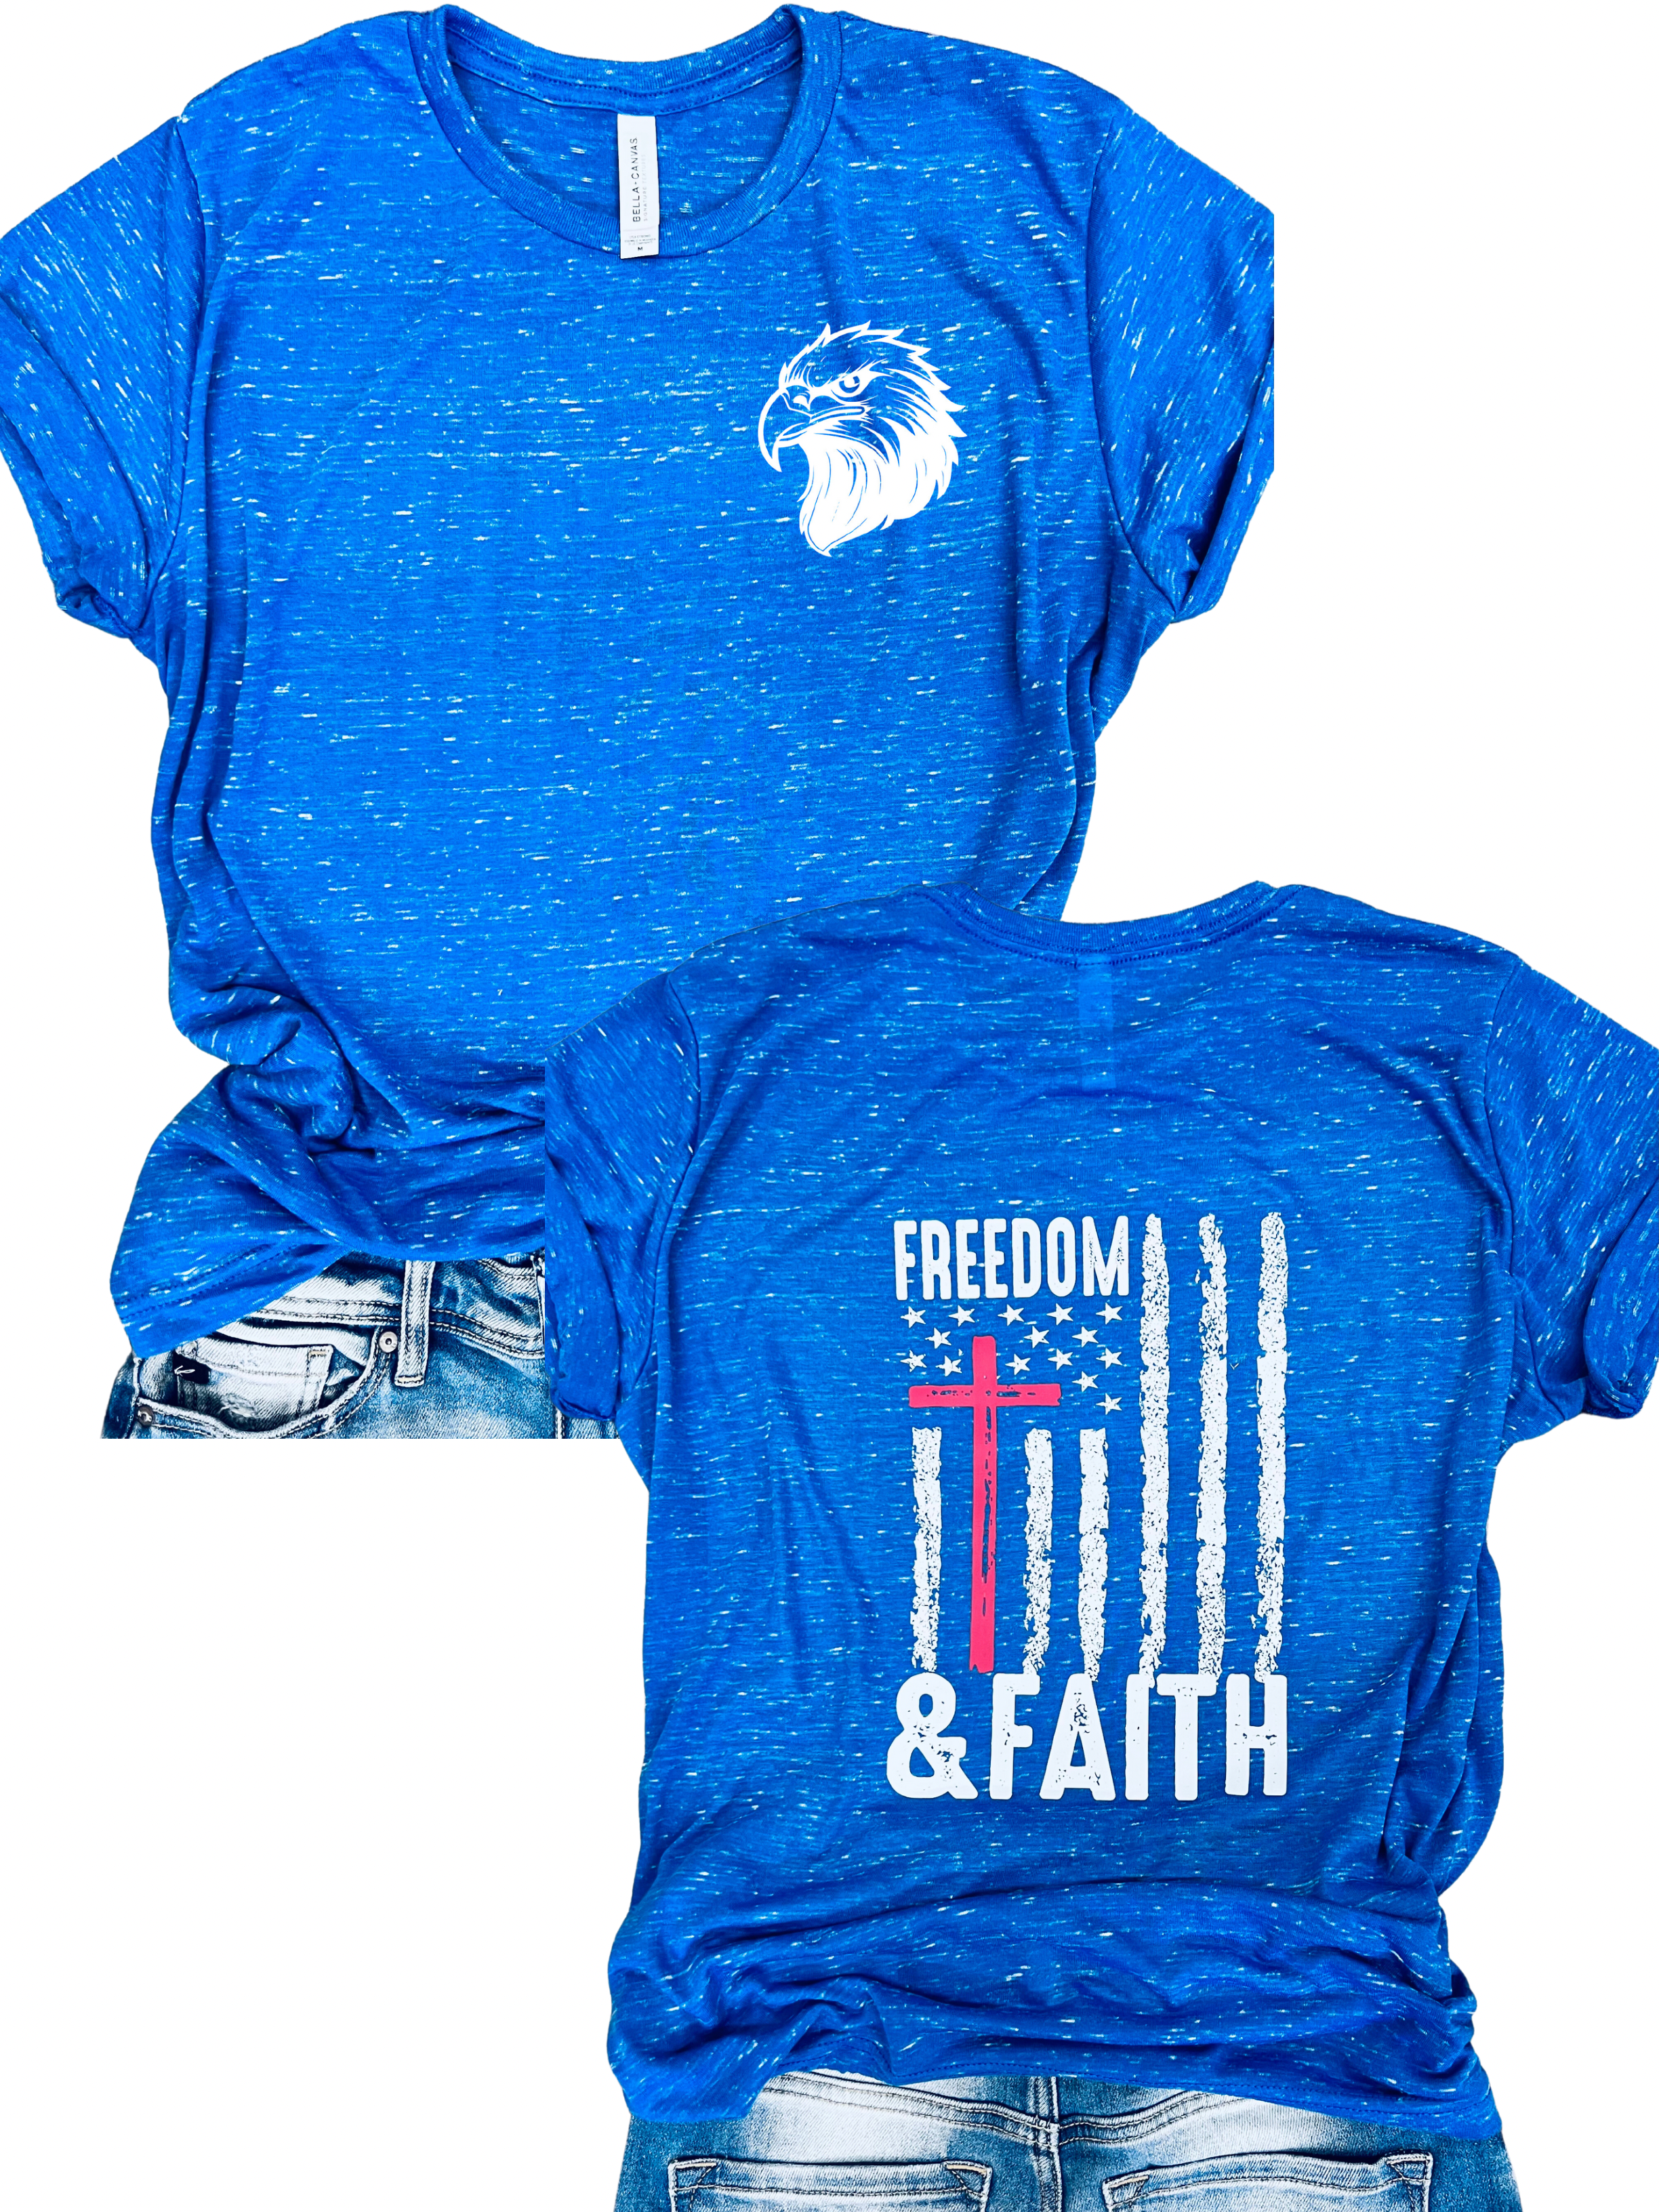 Freedom & Faith Tee in Royal Blue Marble